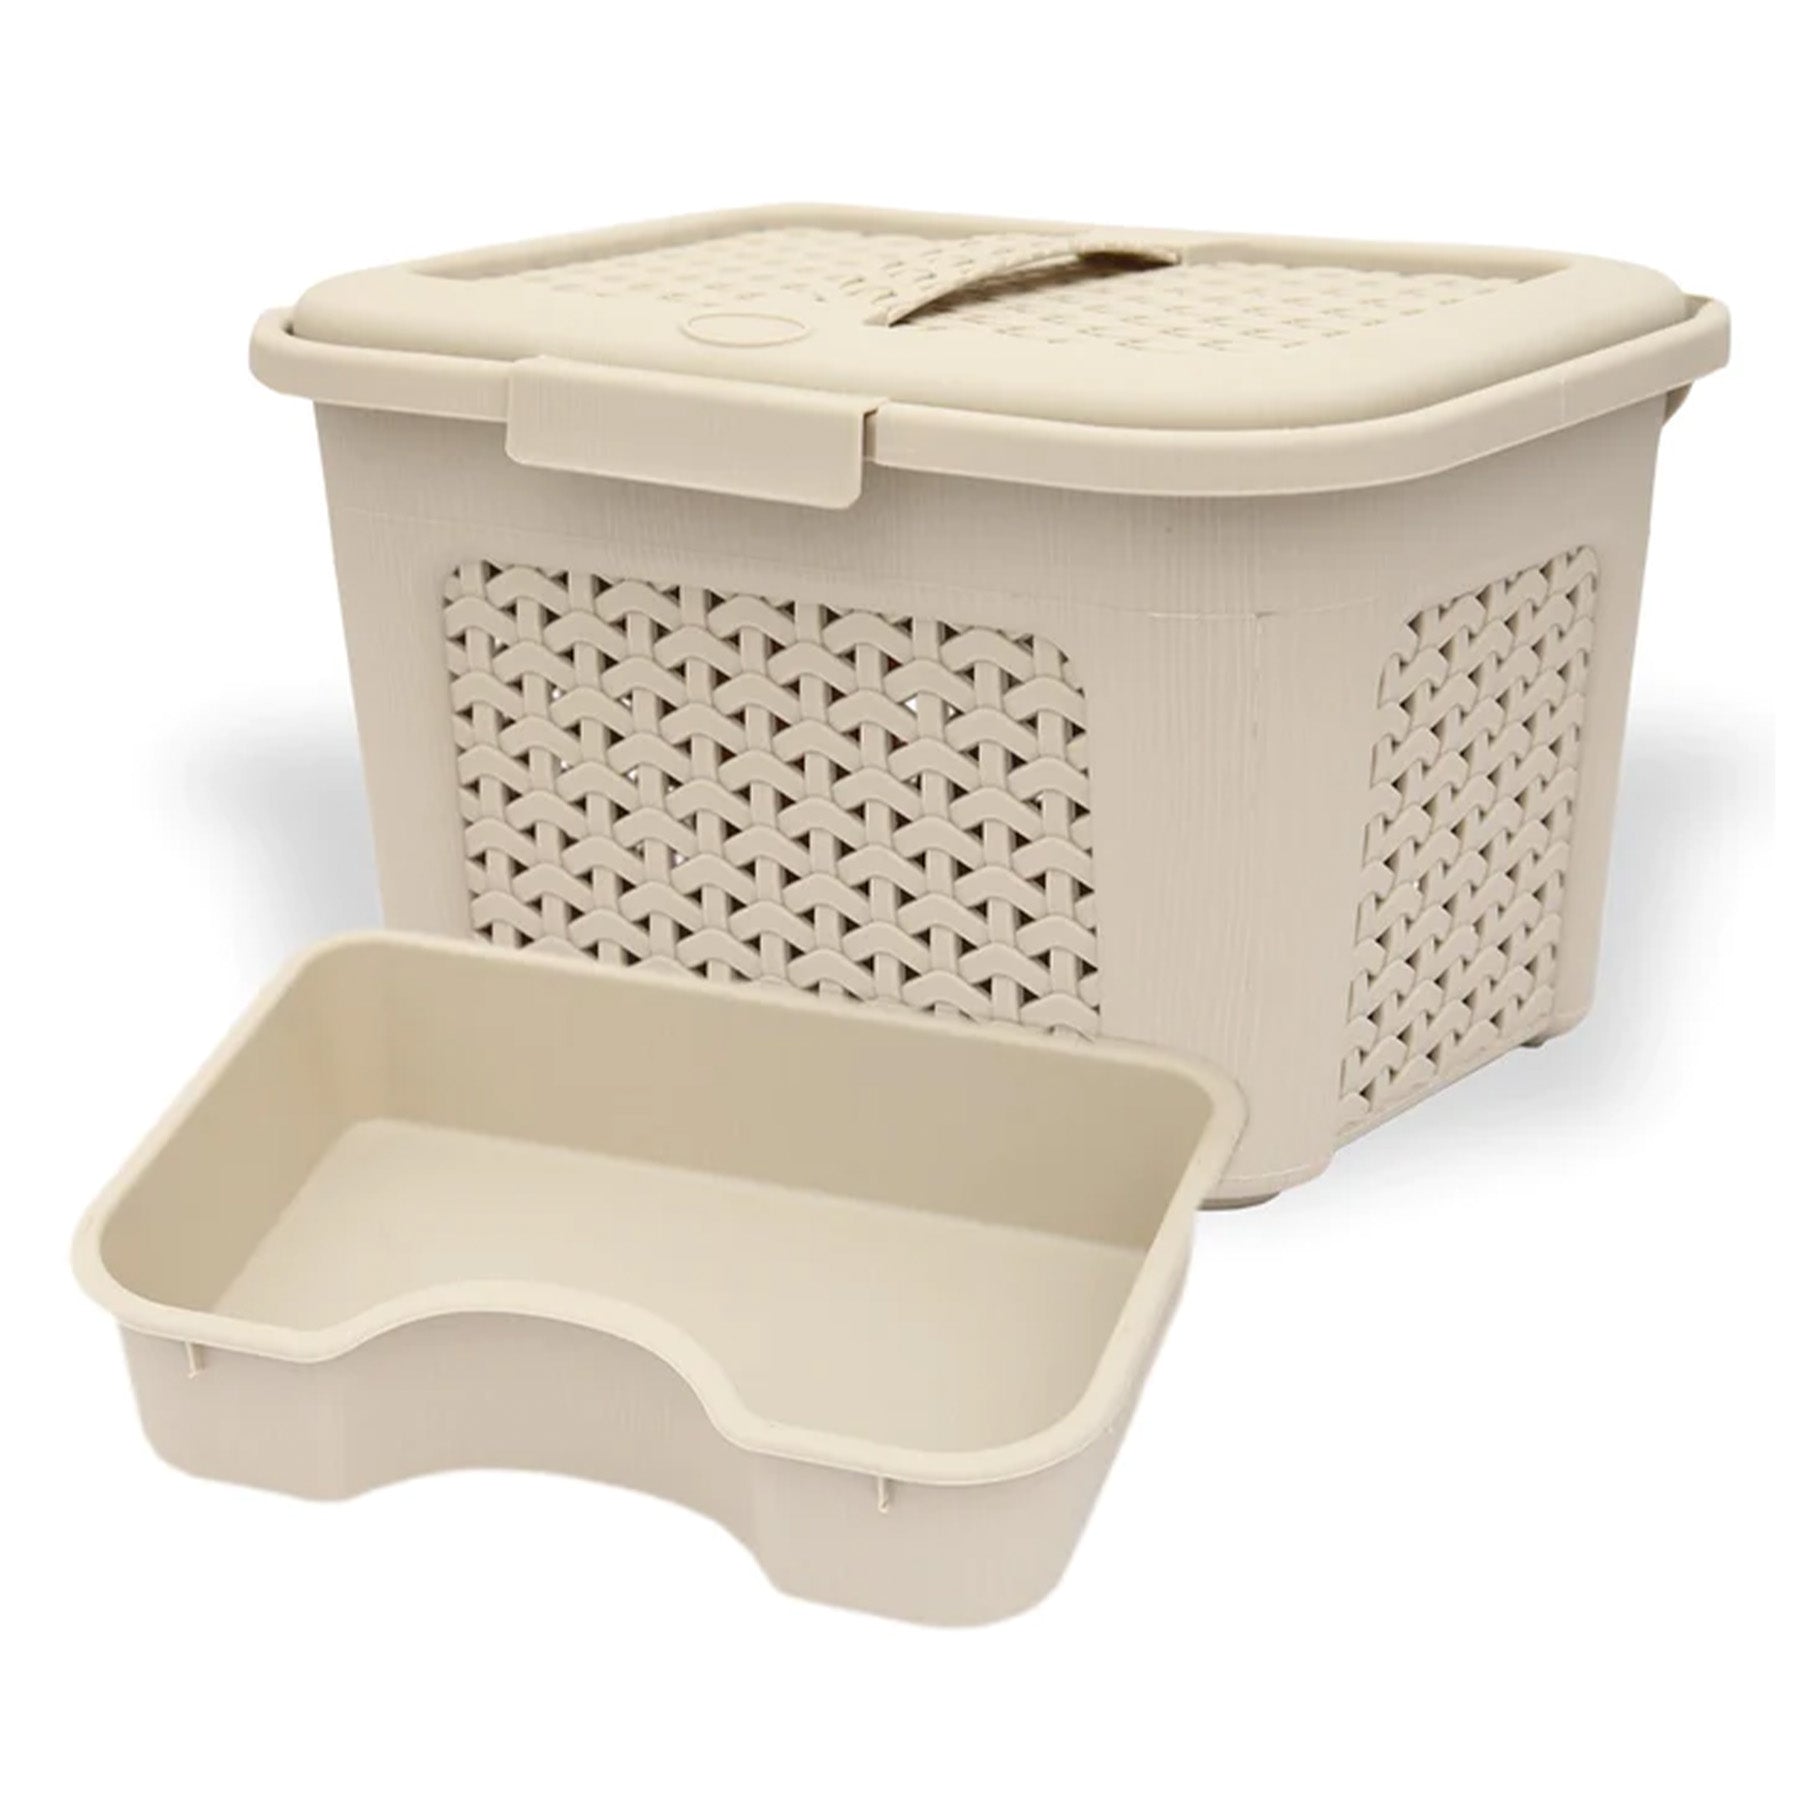 Storage basket with lid - Brown